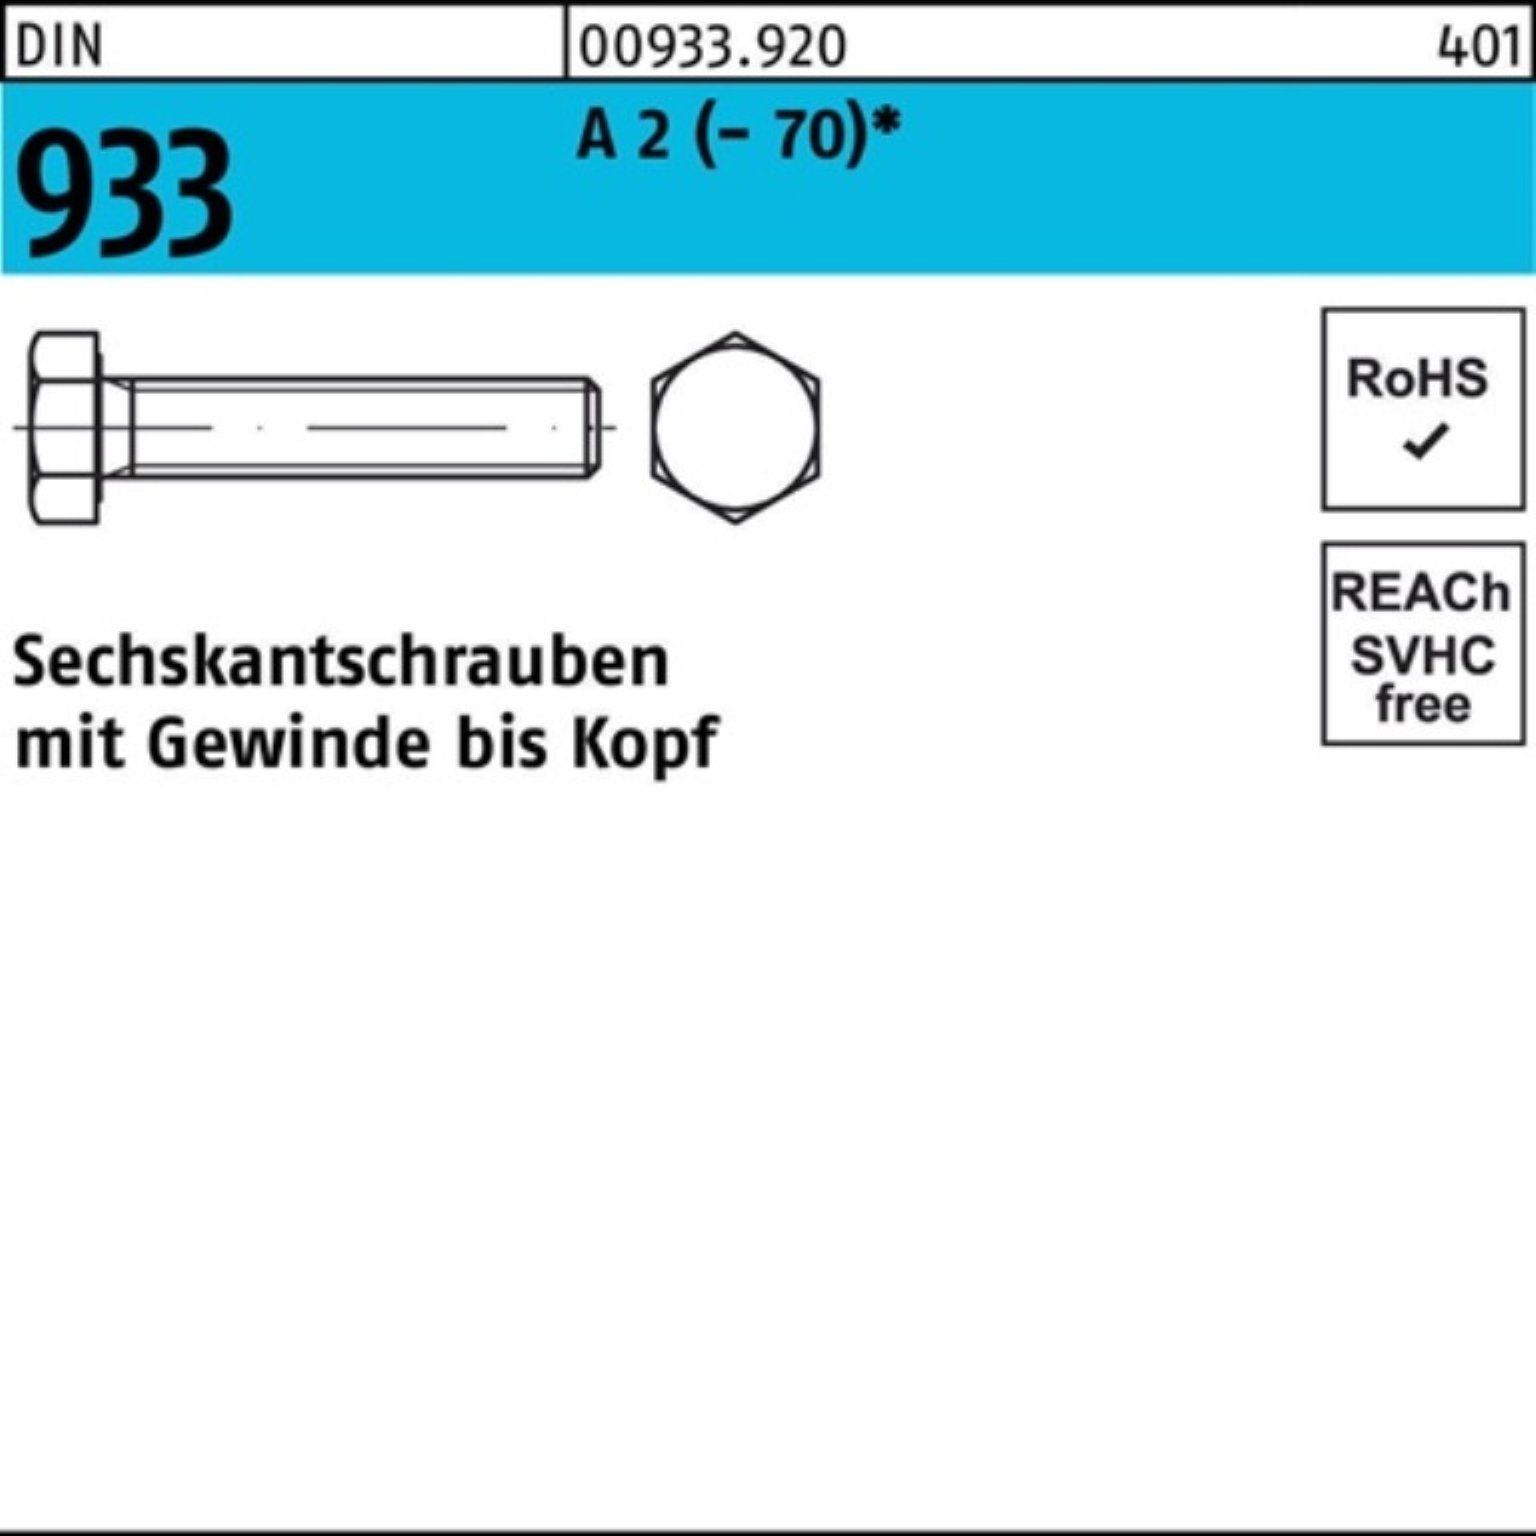 Reyher Sechskantschraube 200er Pack Sechskantschraube DIN 933 VG M6x 20 A 2 (70) 200 Stück D